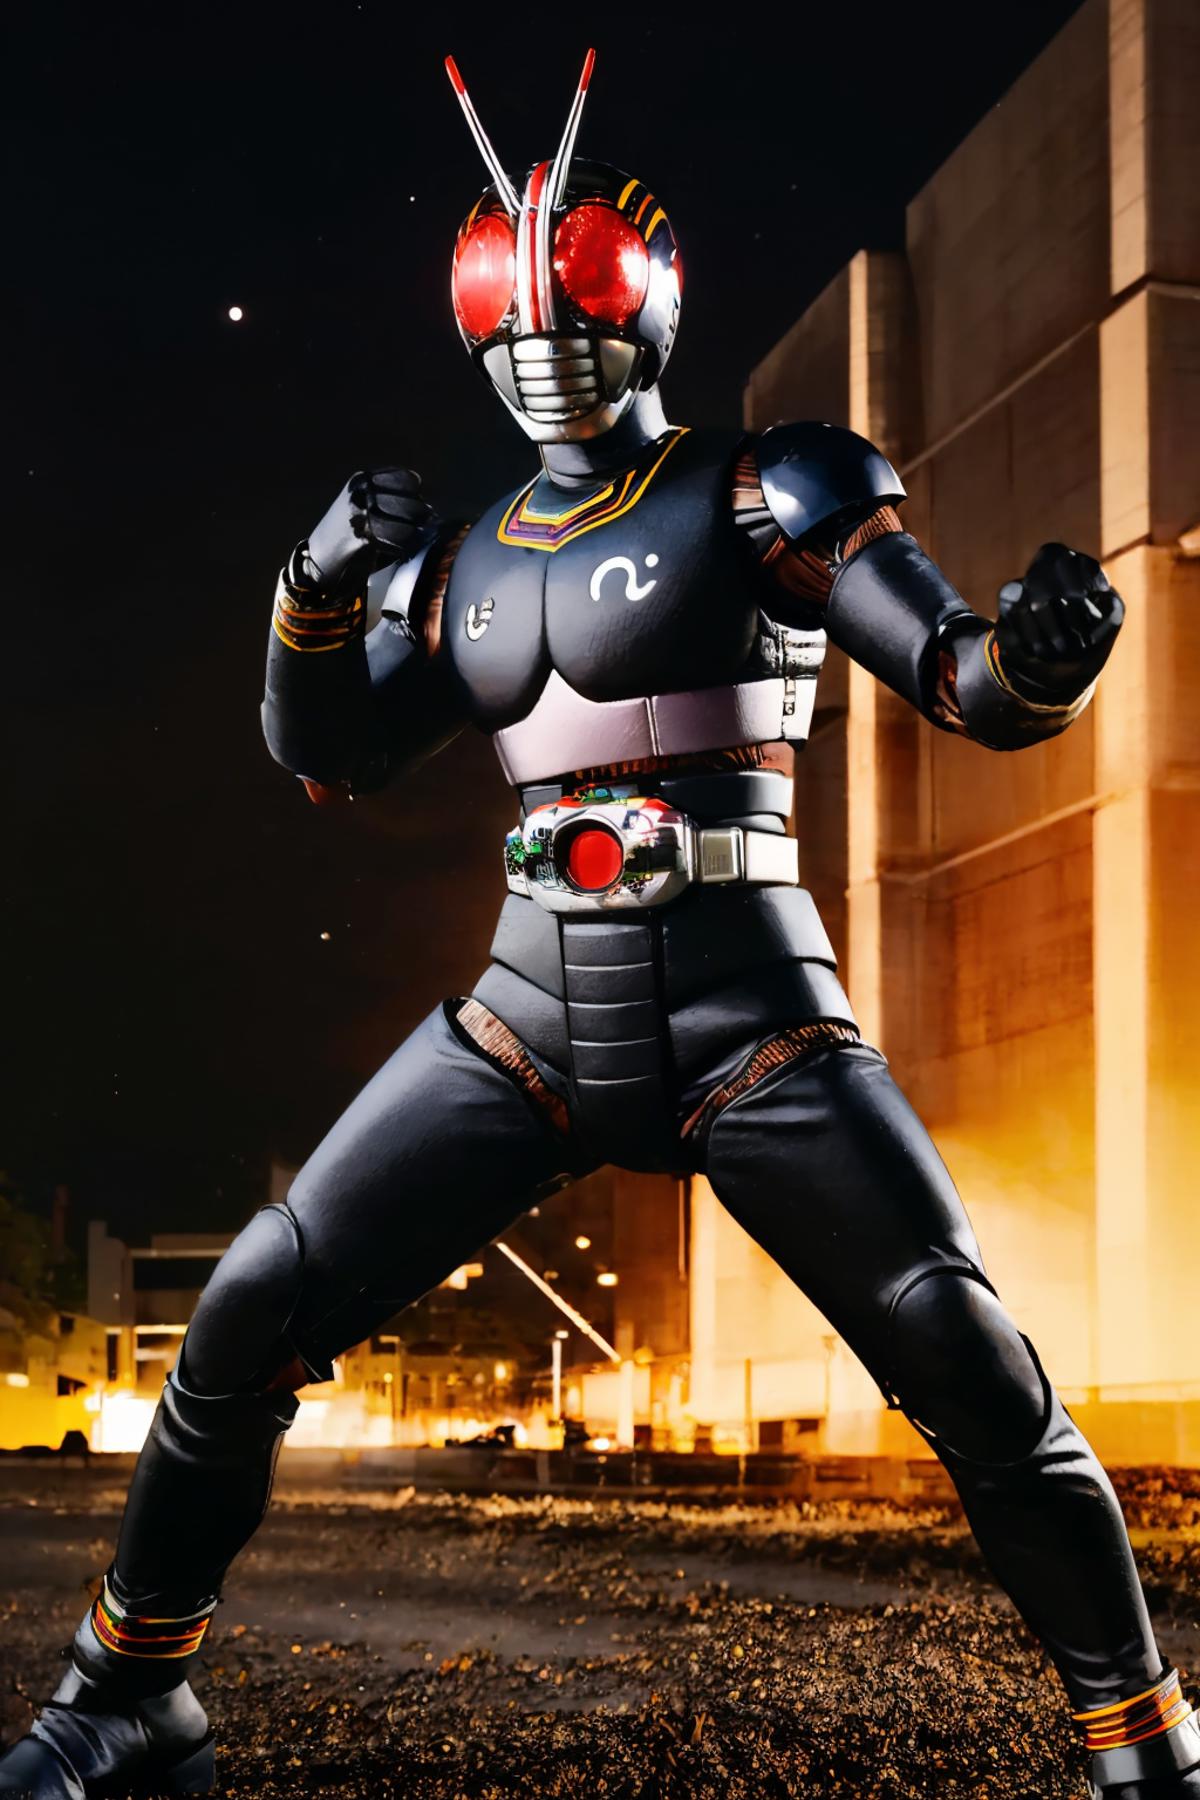 Kamen Rider Black image by zetsubousensei